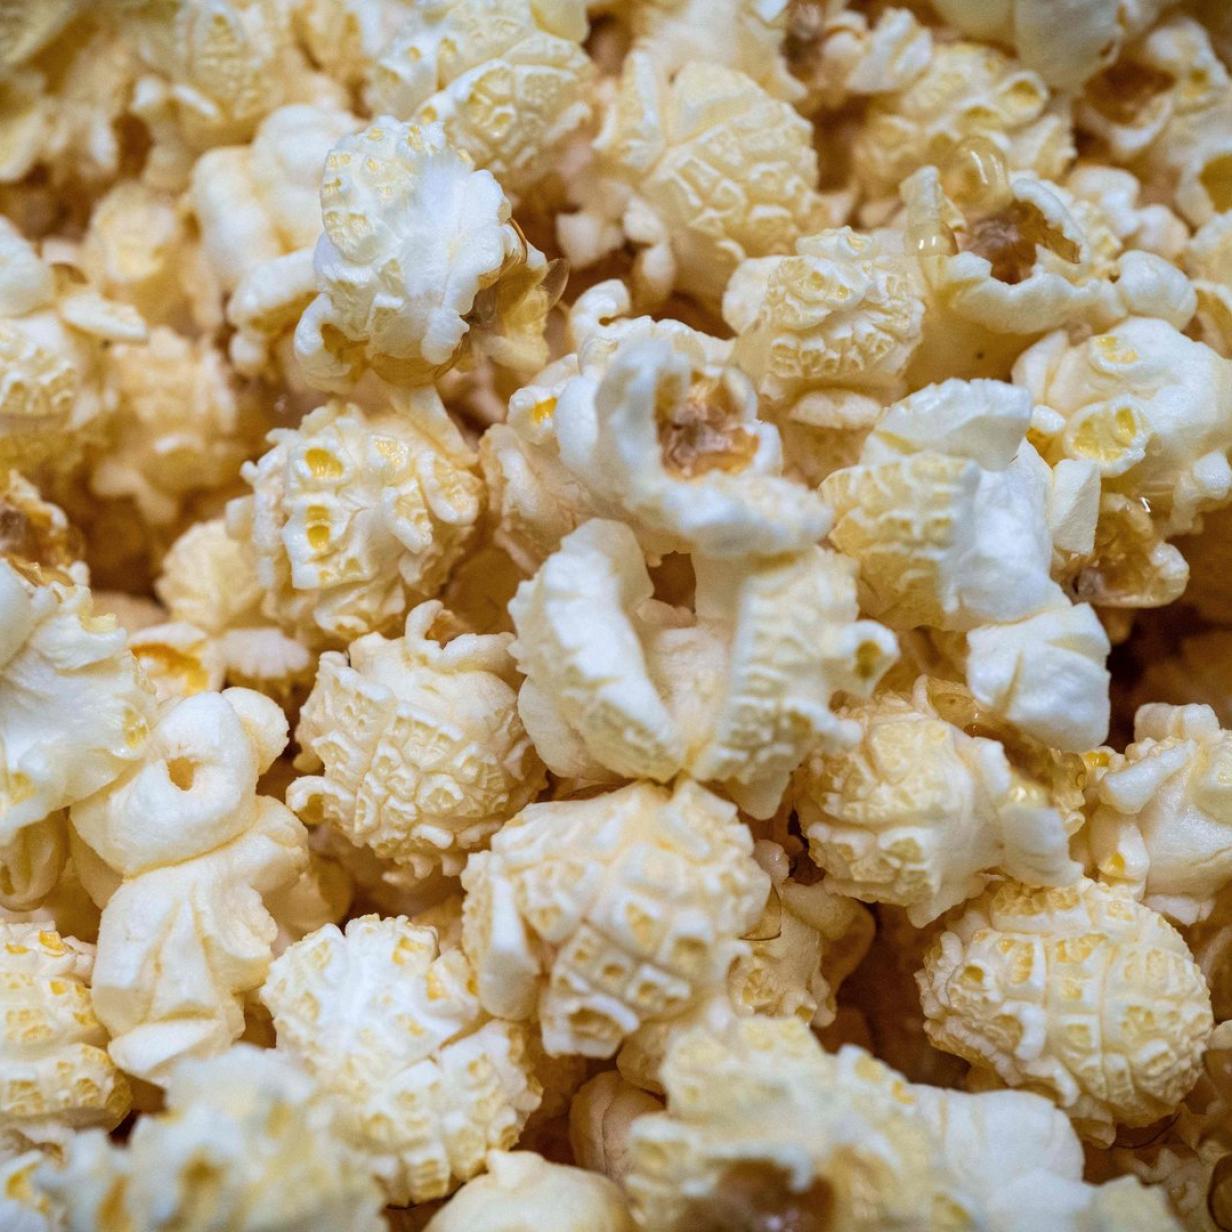 Zu viel Pestizid im Popcorn: Mehrere Produkte bei Lidl zurückgerufen